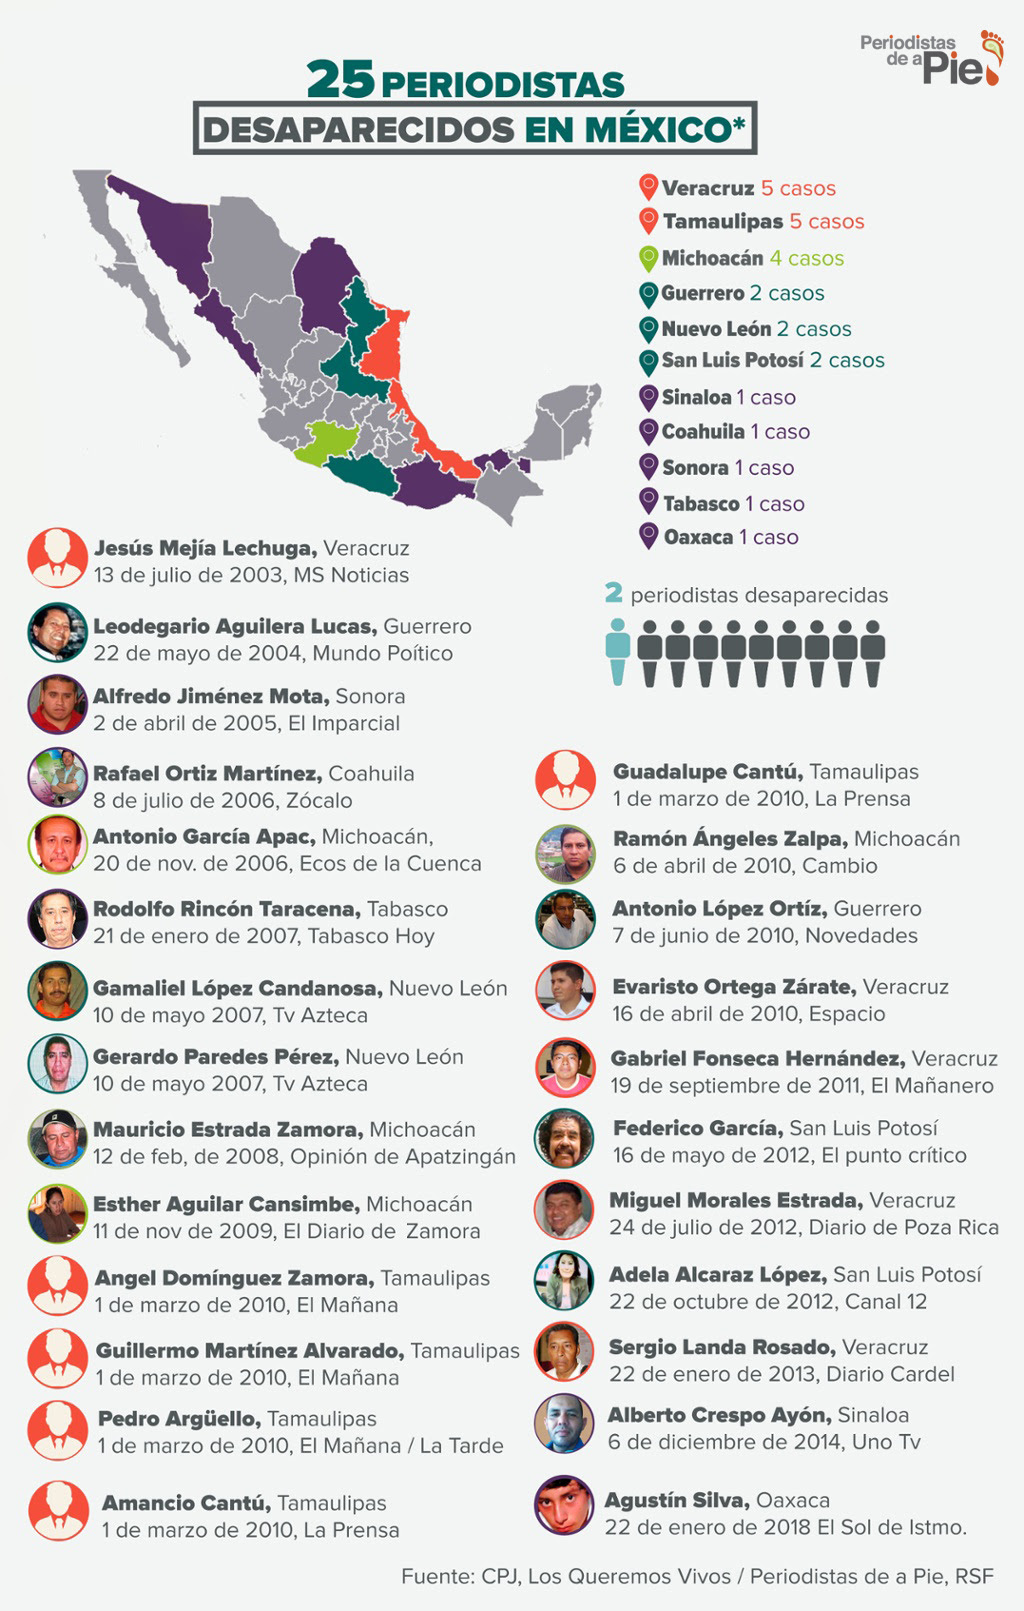 Periodistas desaparecidos en México